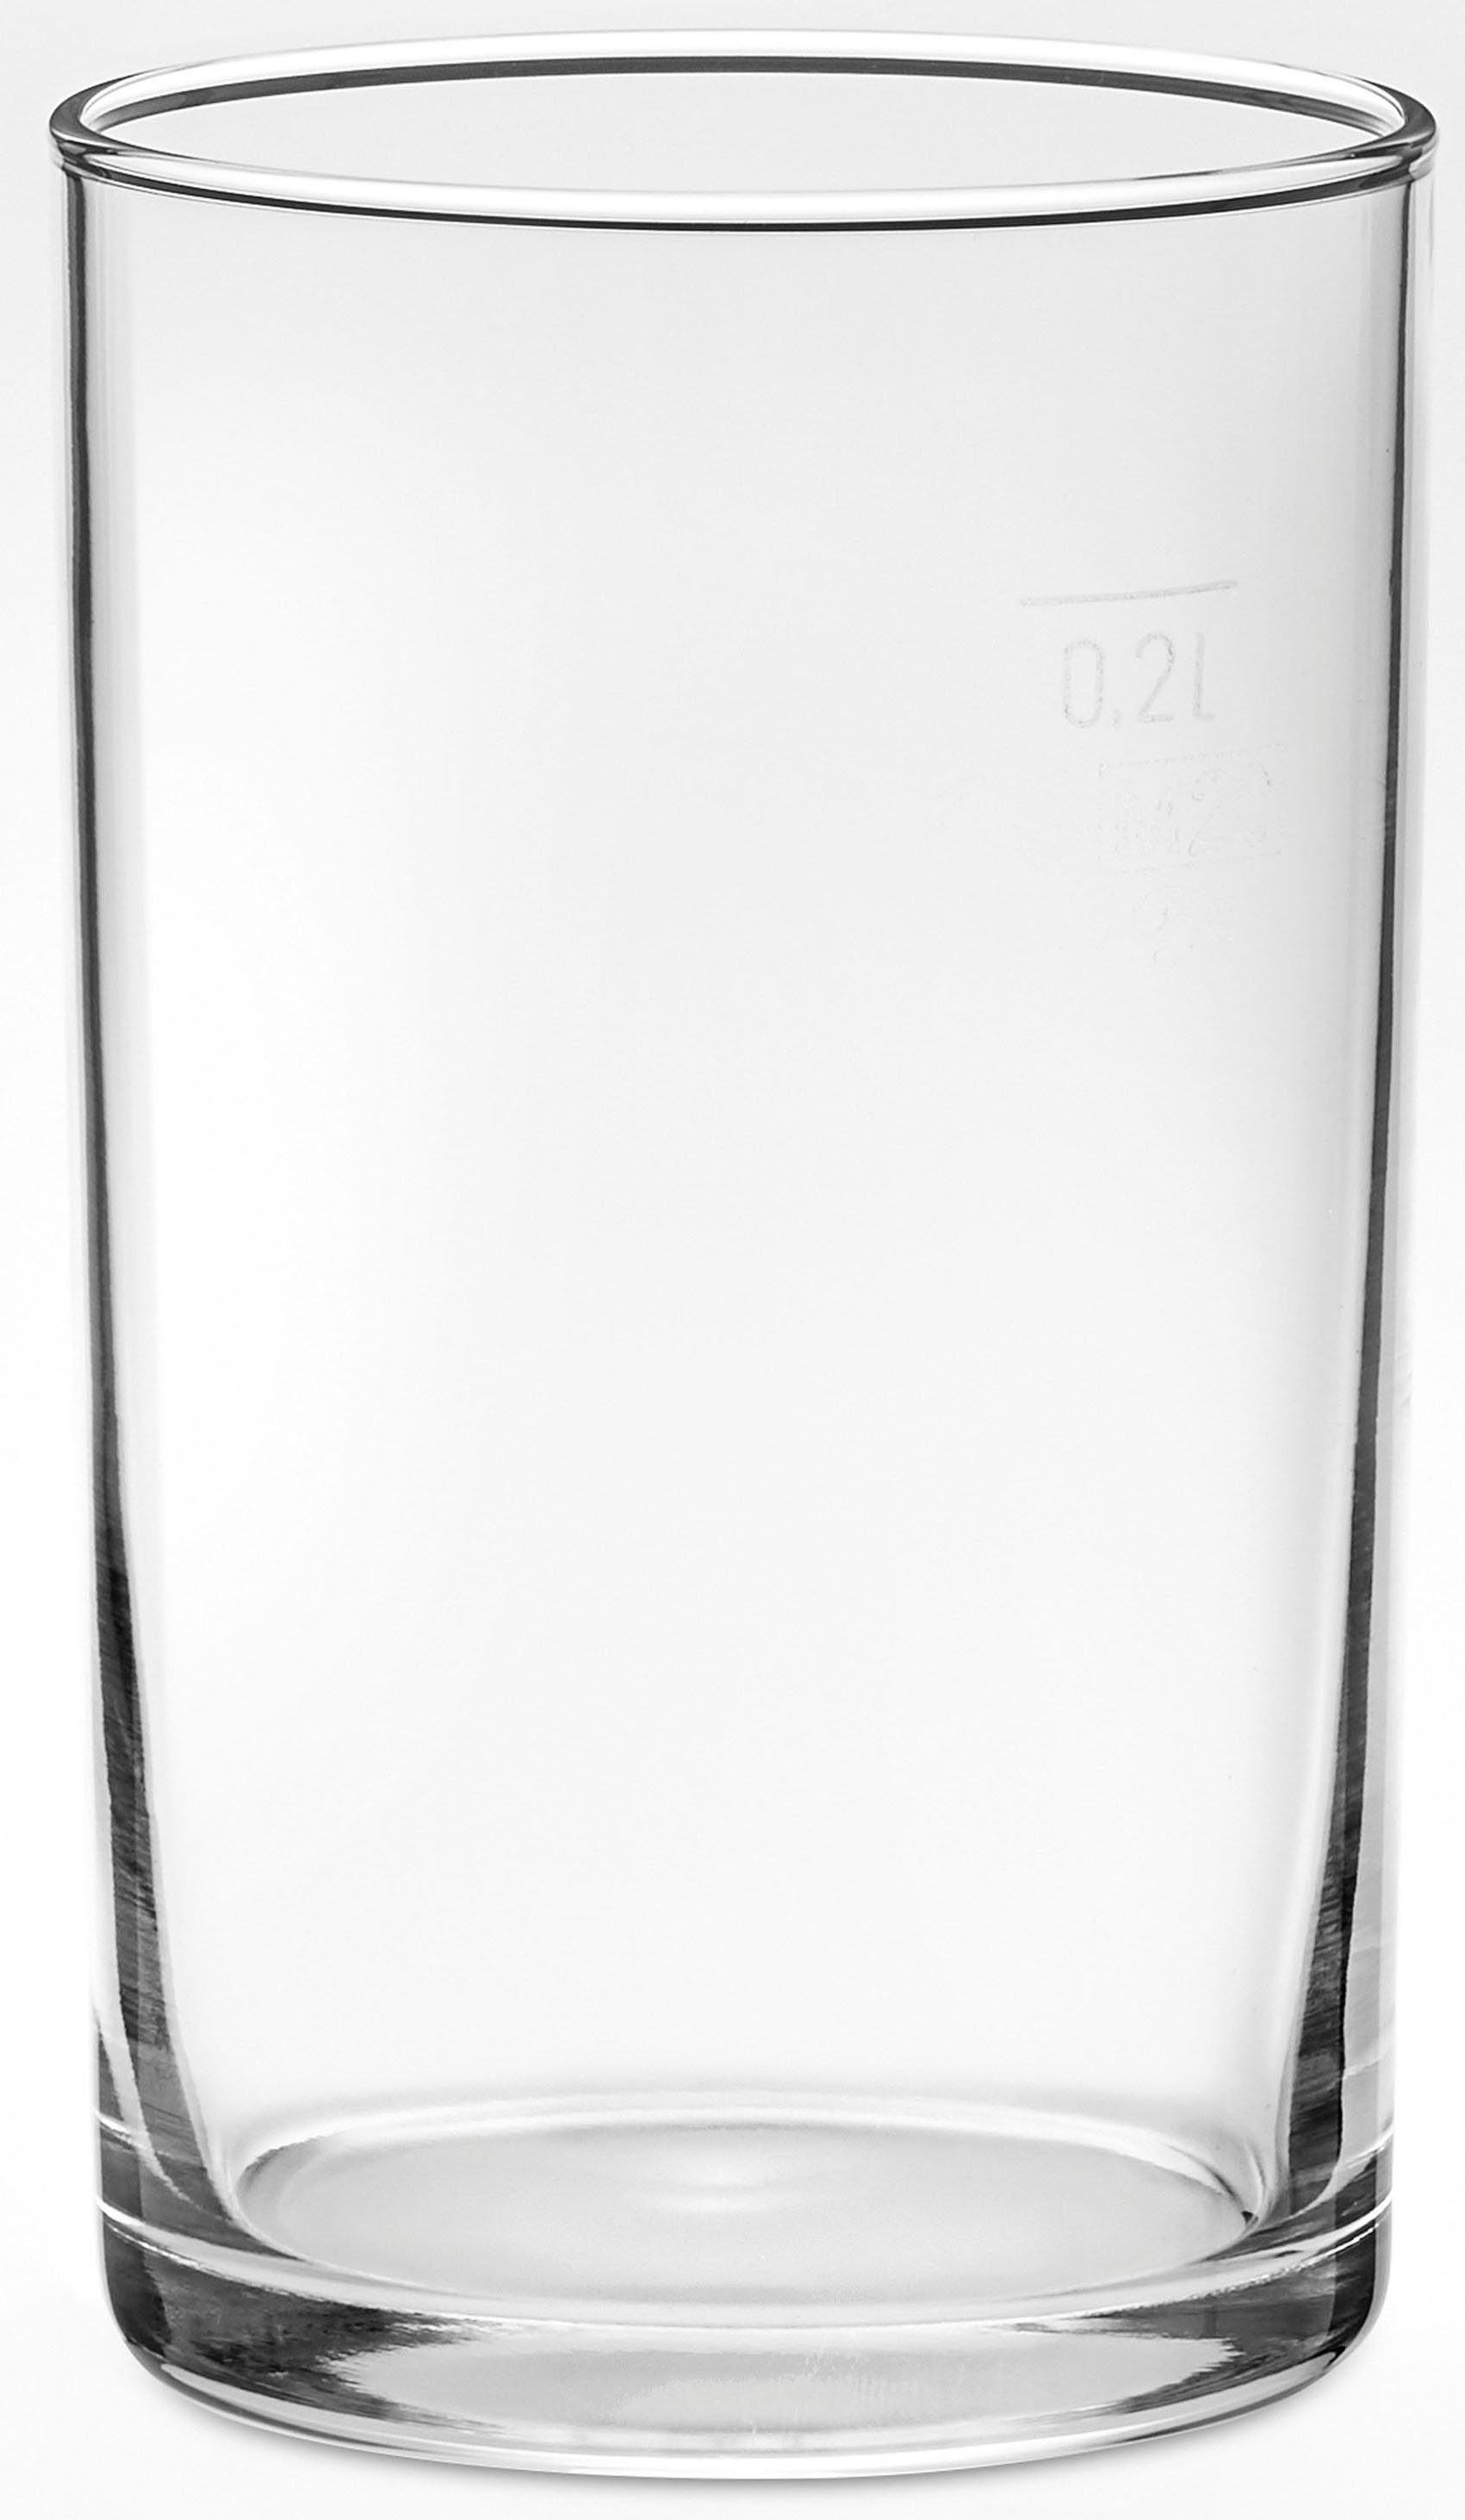 van Well Bierglas Altbierbecher, Glas, 0,2 L, geeicht, spülmaschinenfest, Gastronomiequalität, 12-tlg.